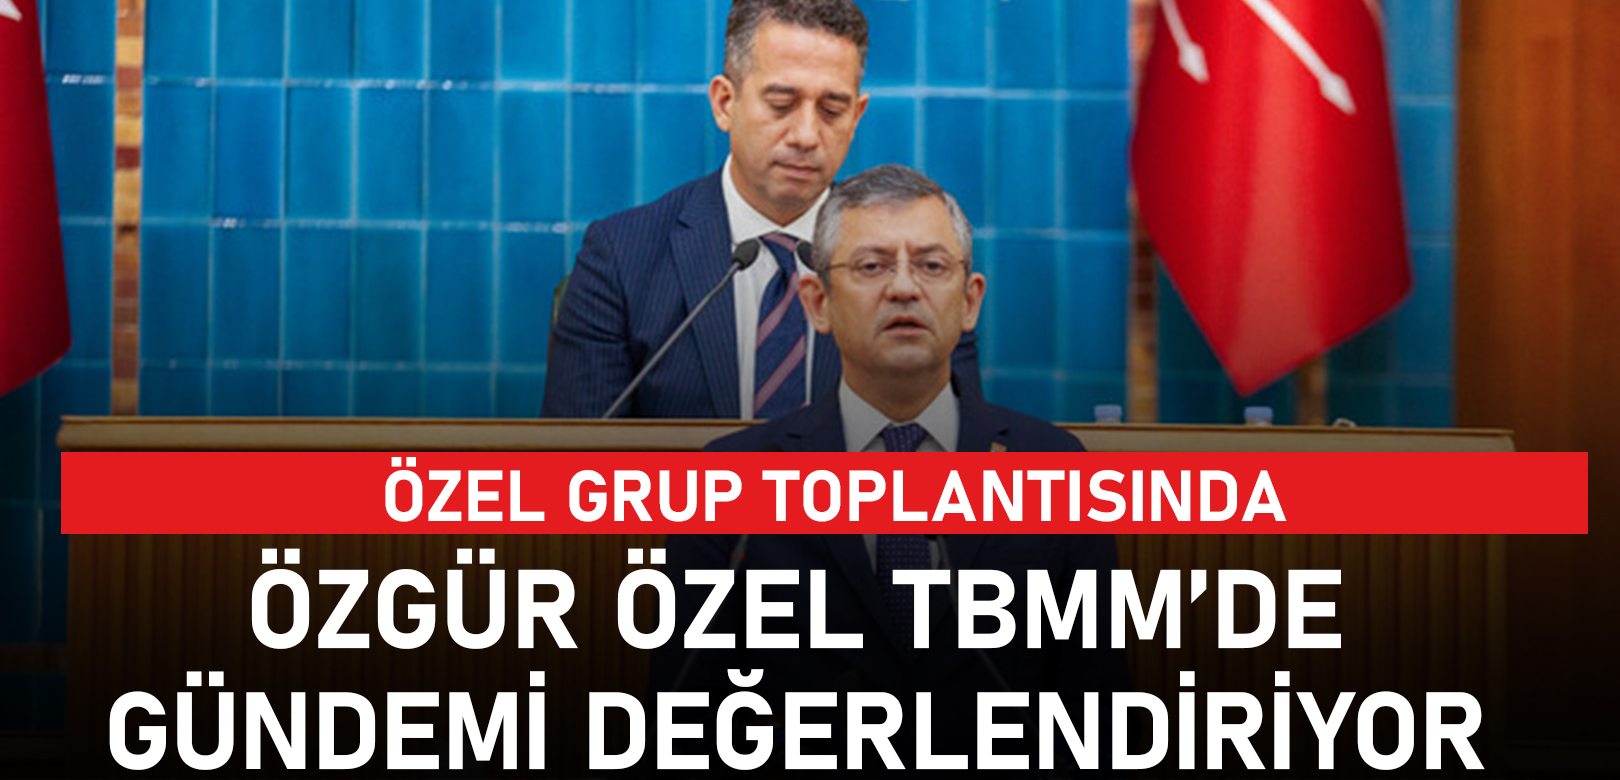 Özgür Özel, Bahçeli ve Erdoğan’a seslendi: Ağzınıza dolamışsınız, DEM, milletin derdi zam